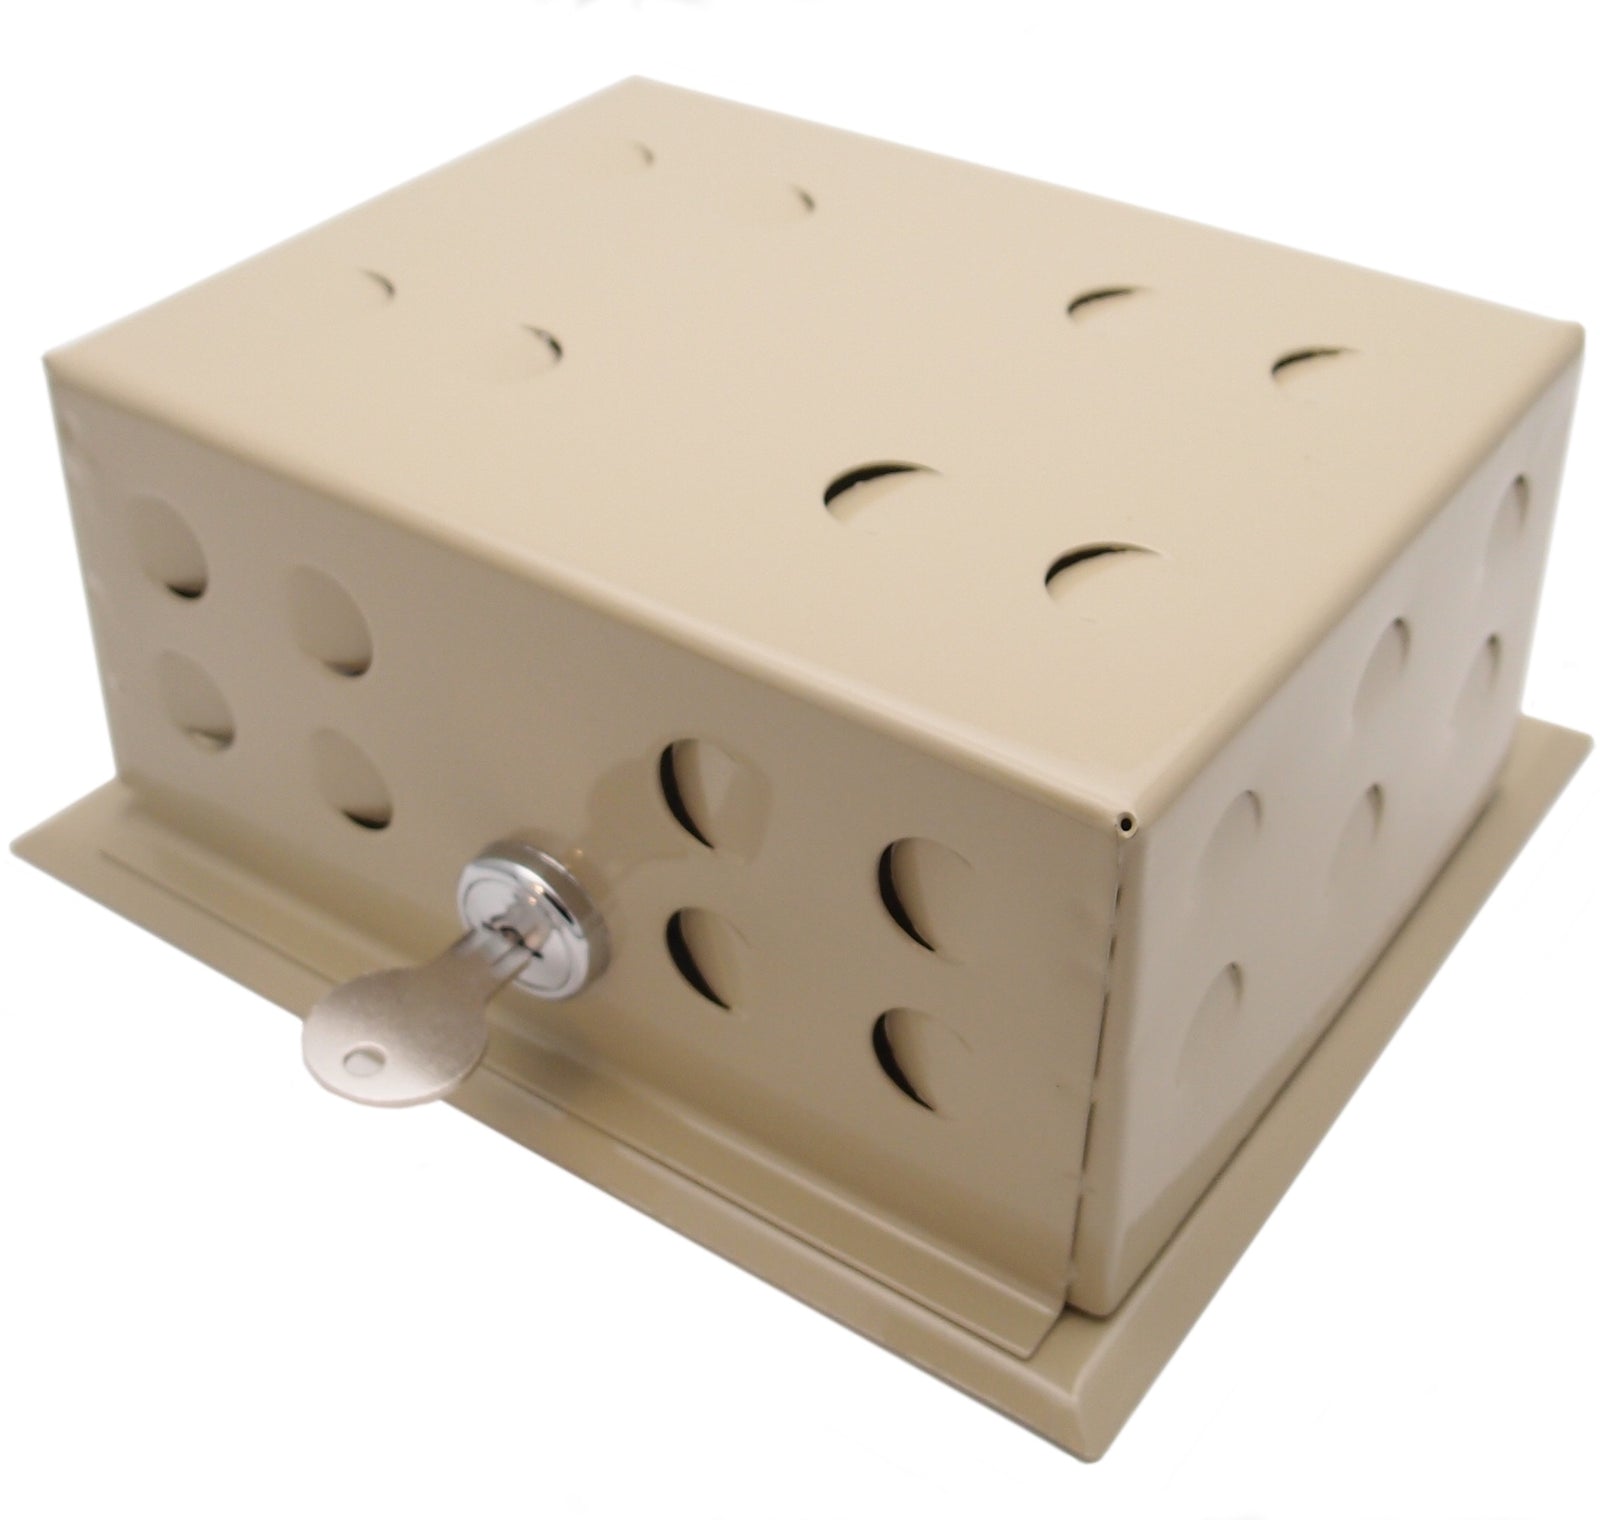 Thermostat Box - HVAC Premium